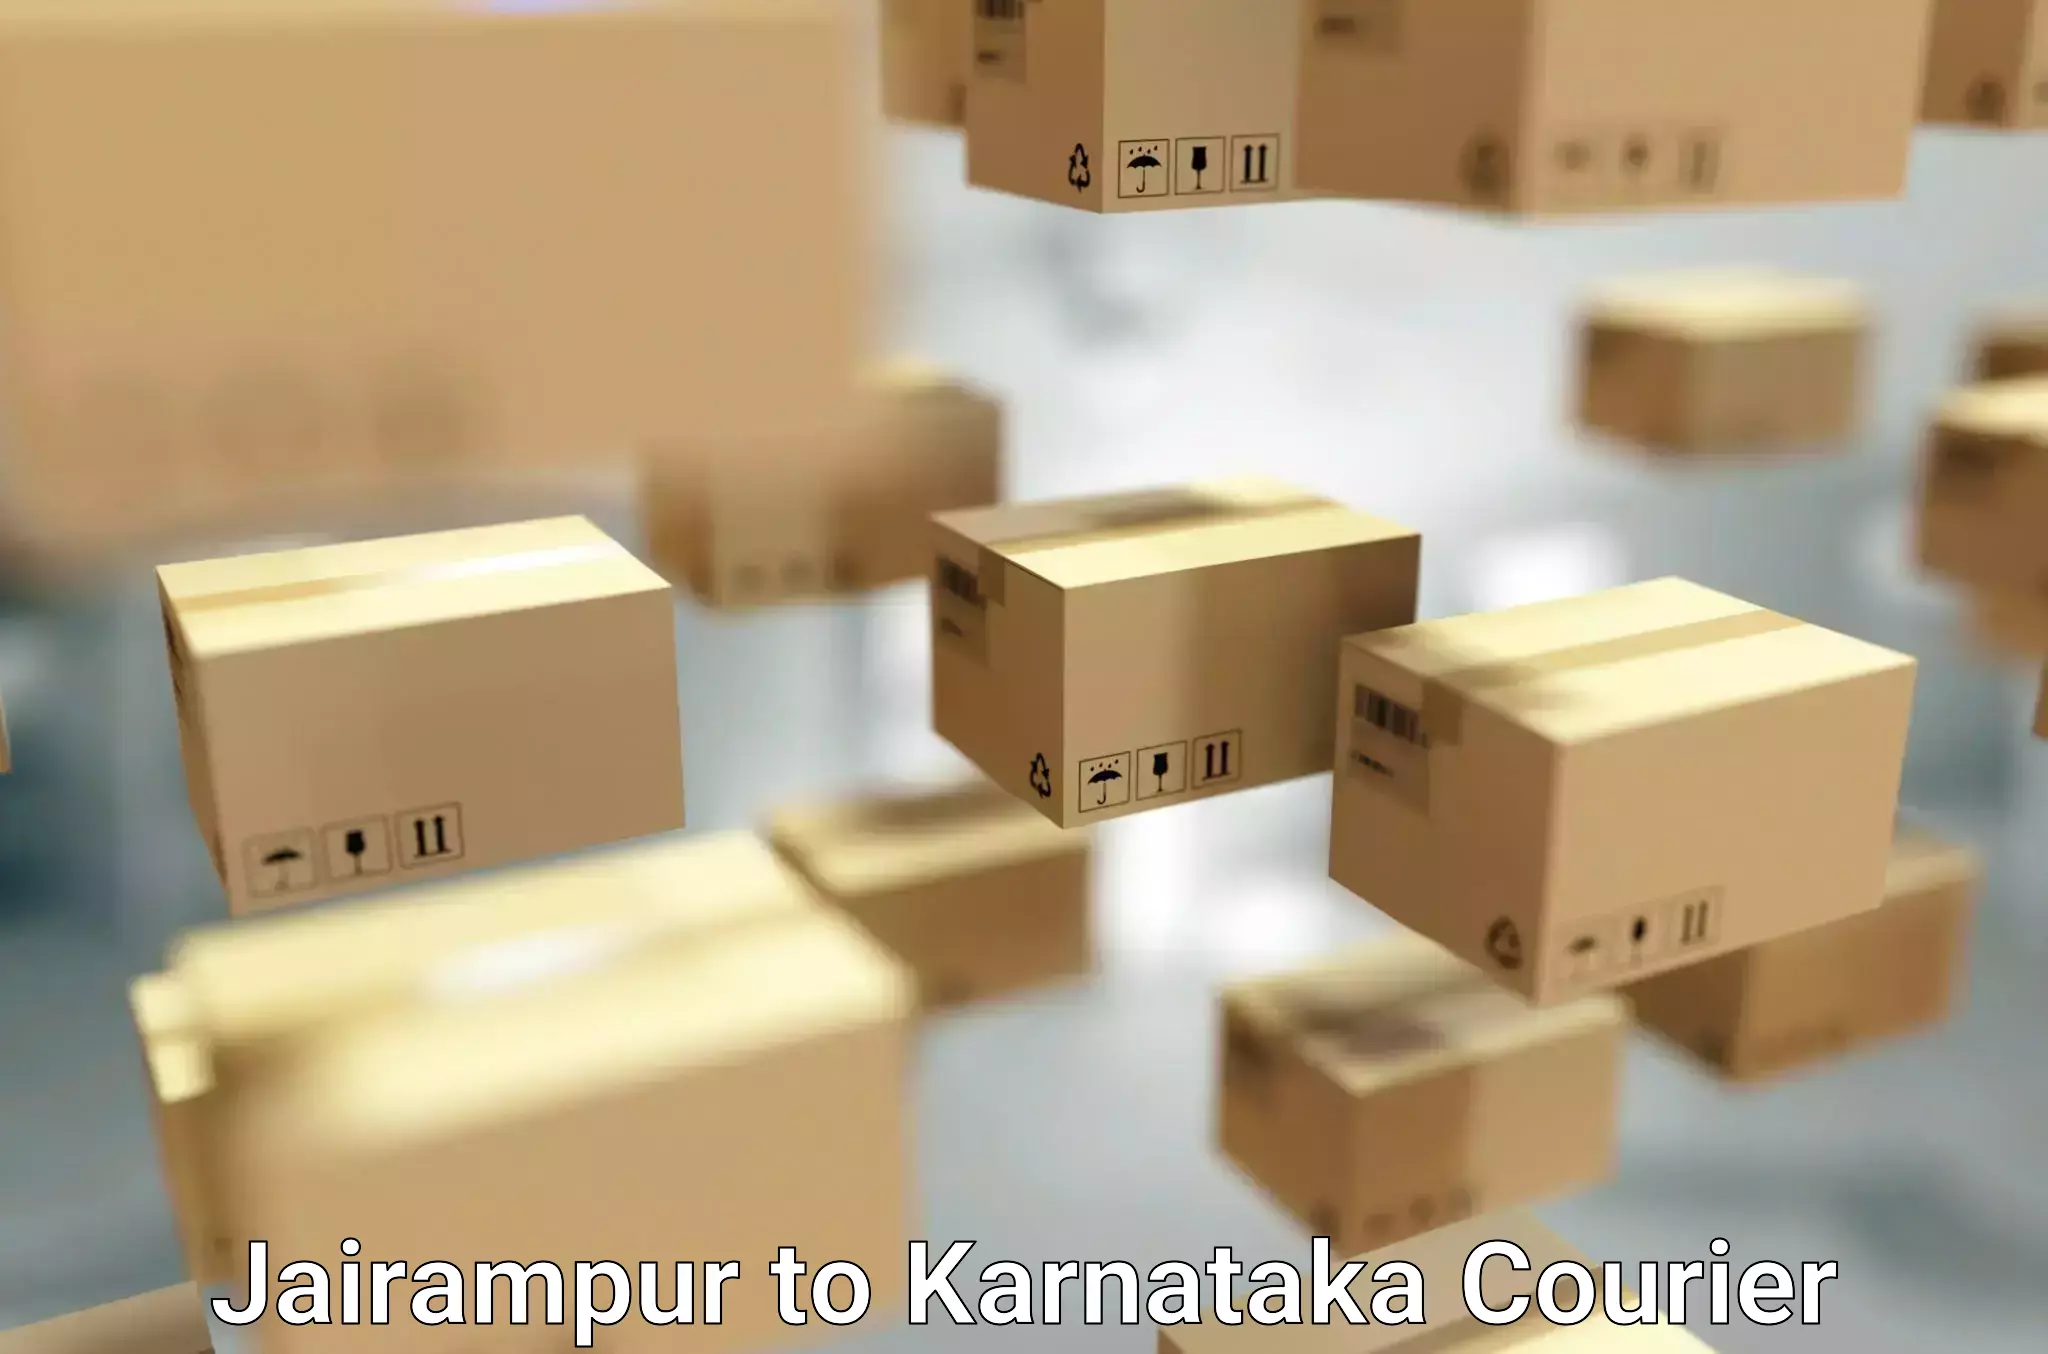 Furniture moving service Jairampur to Karnataka